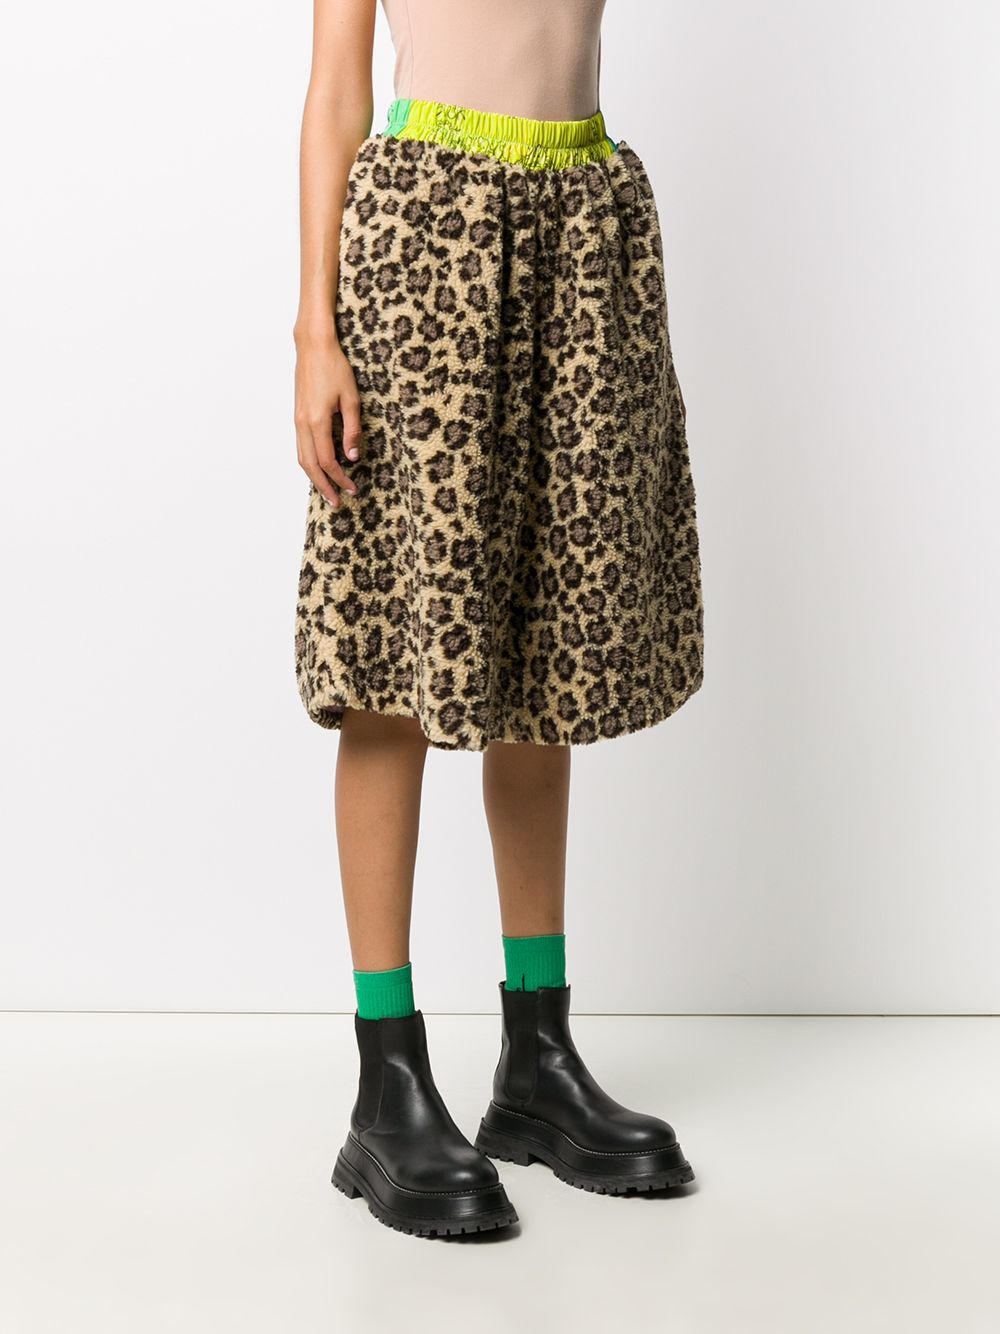 фото Natasha zinko флисовые шорты с леопардовым принтом